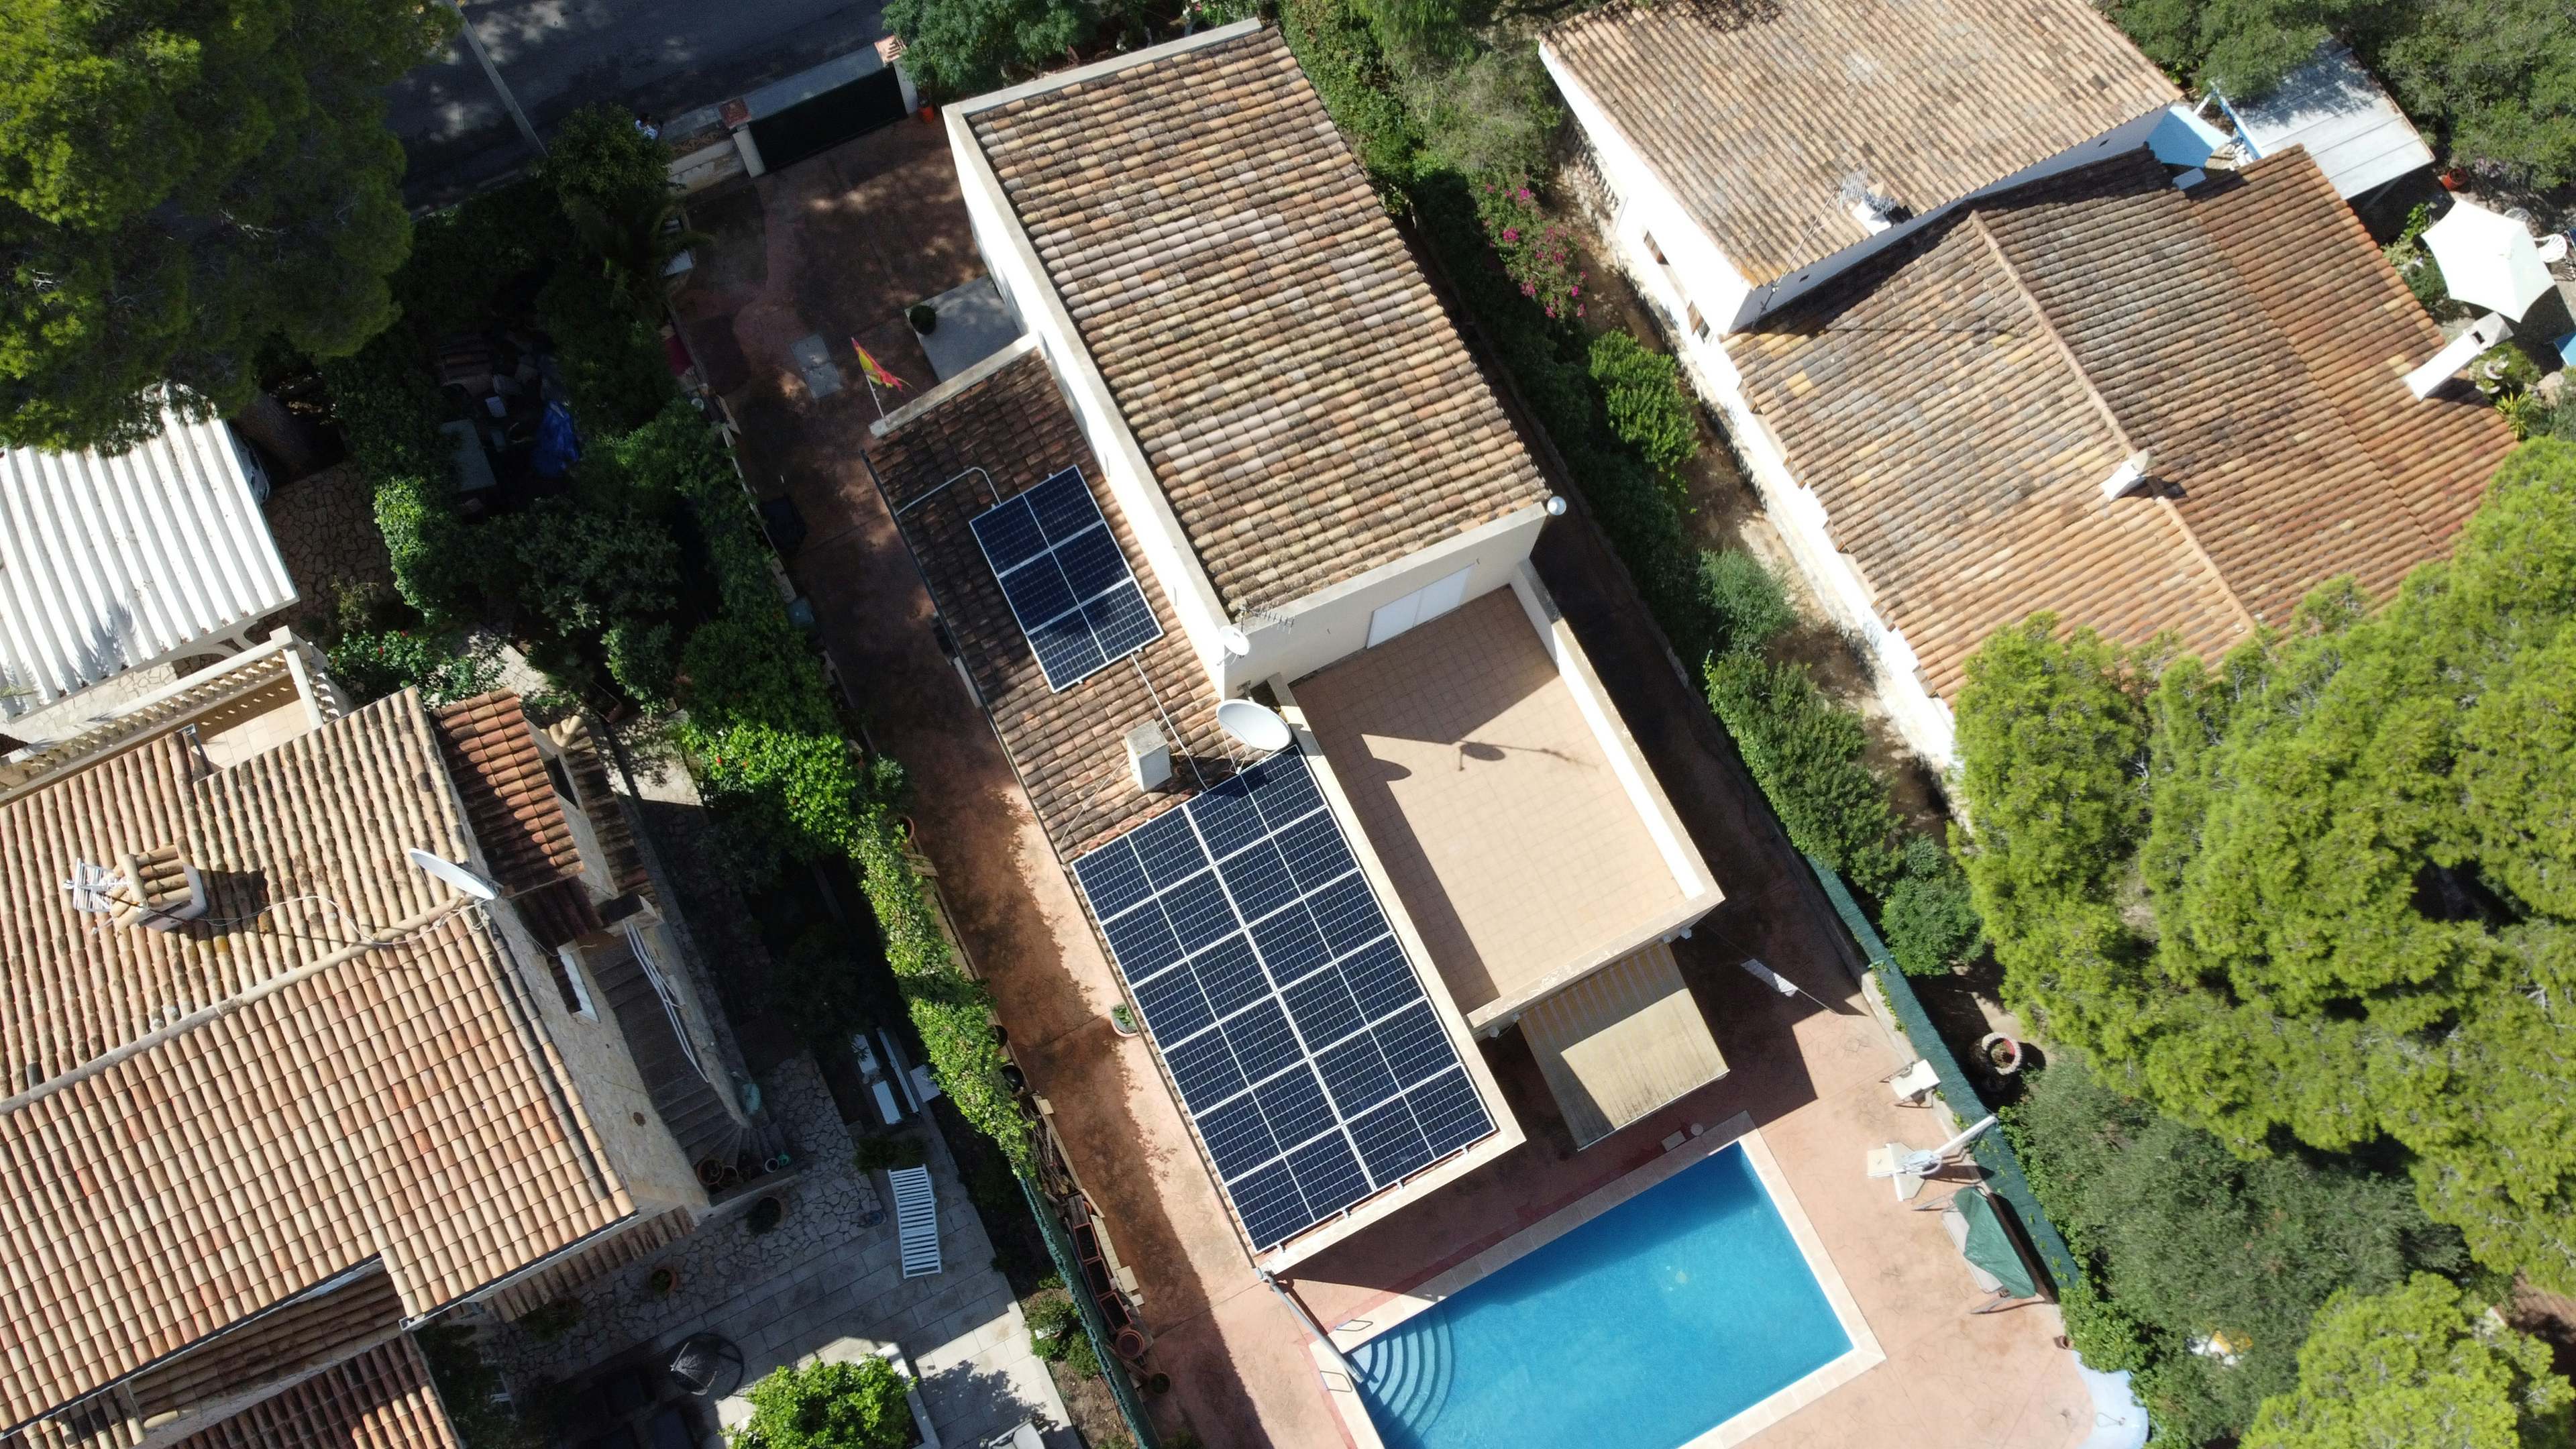 Instalación de placas solares en El Toro - Mallorca